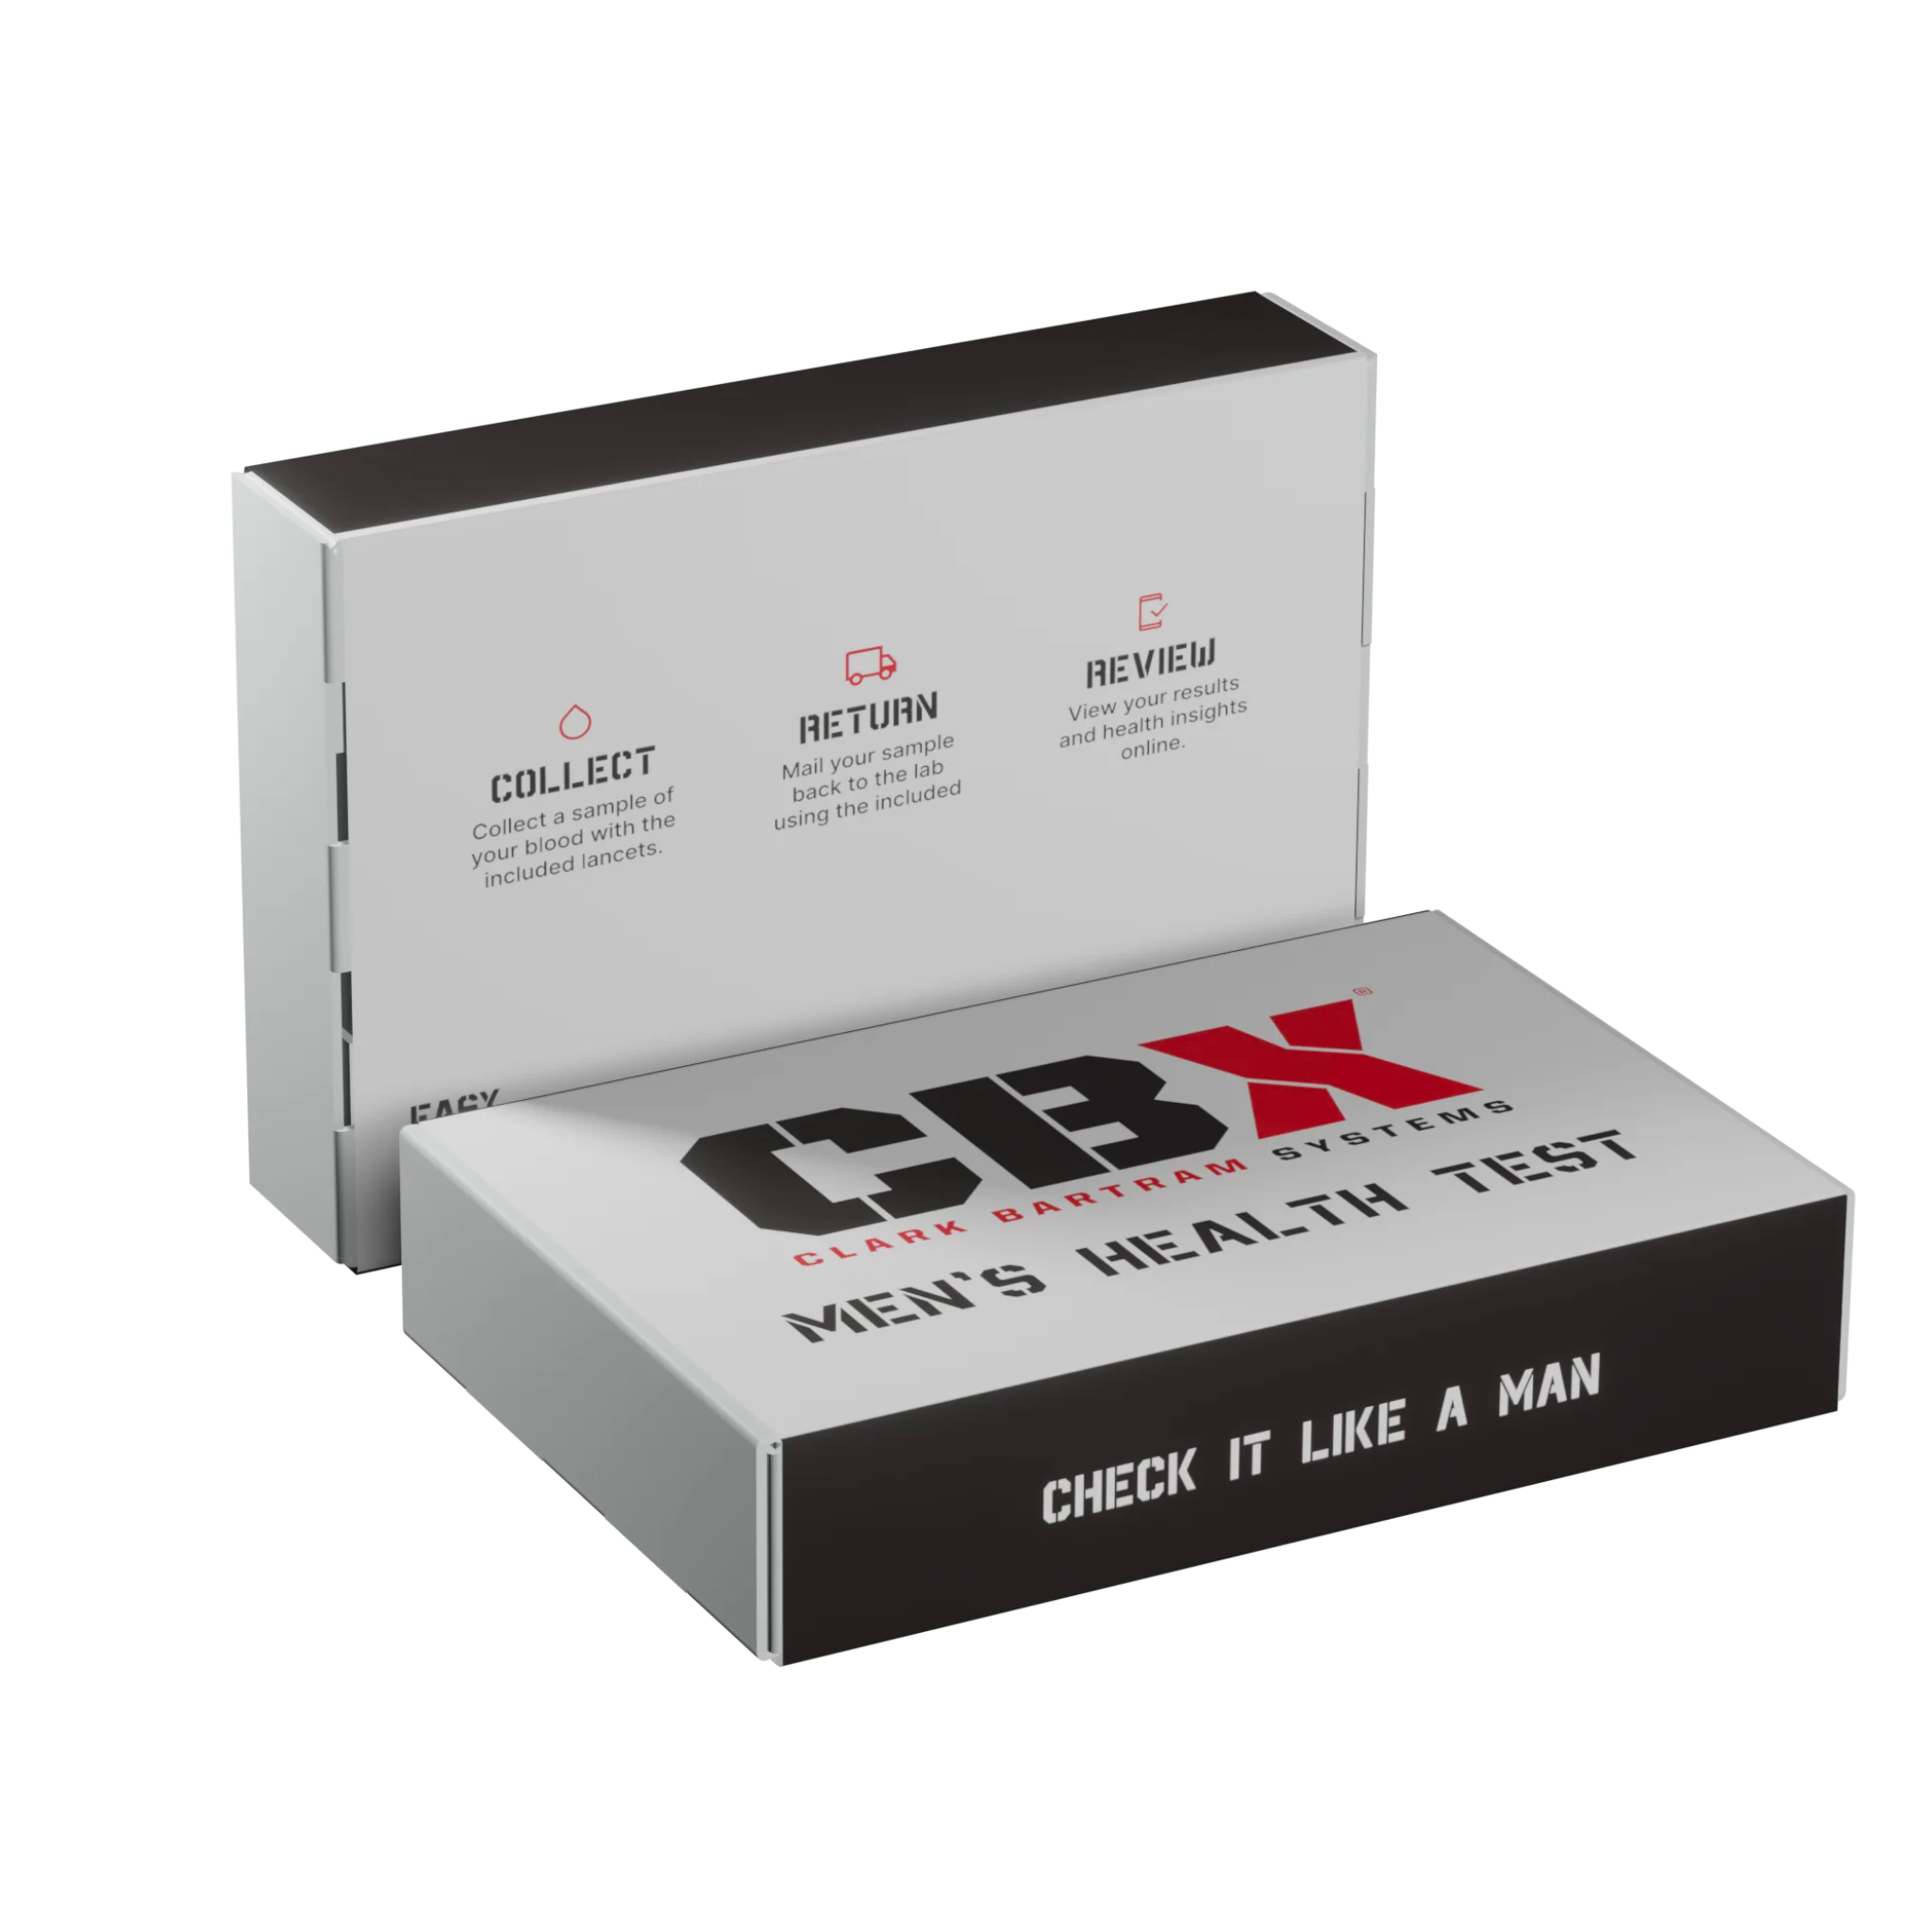 CBX Men's Health Test Kit